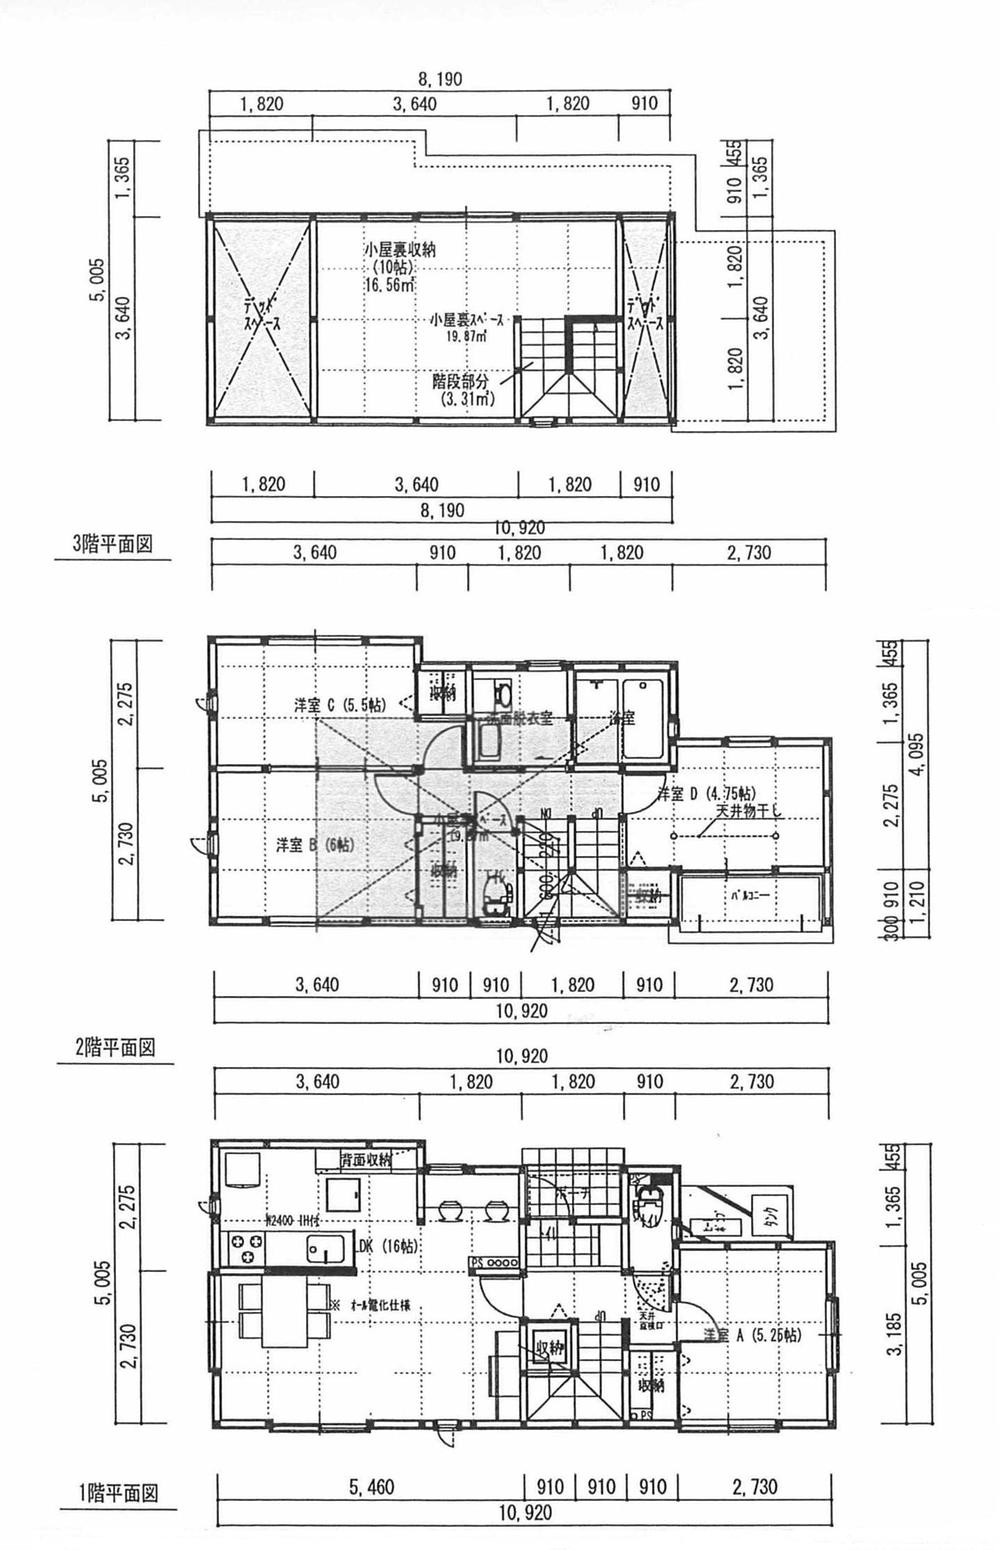 Floor plan. 23 million yen, 4LDK, Land area 107.45 sq m , Building area 90.08 sq m